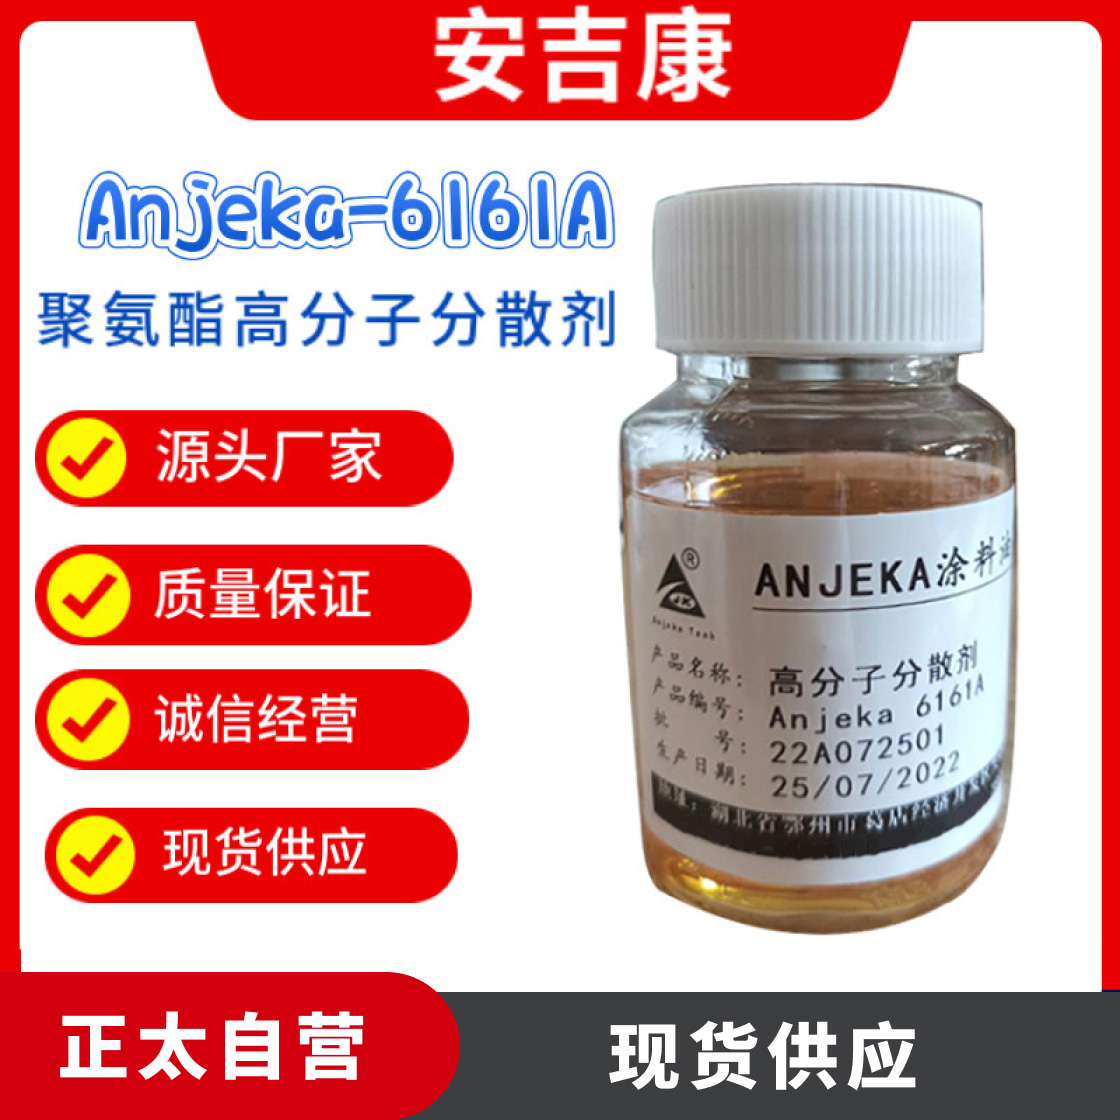 高分子分散剂Anjeka-6161A 可替代BYK163 EFKA4063汽车炭黑分散剂